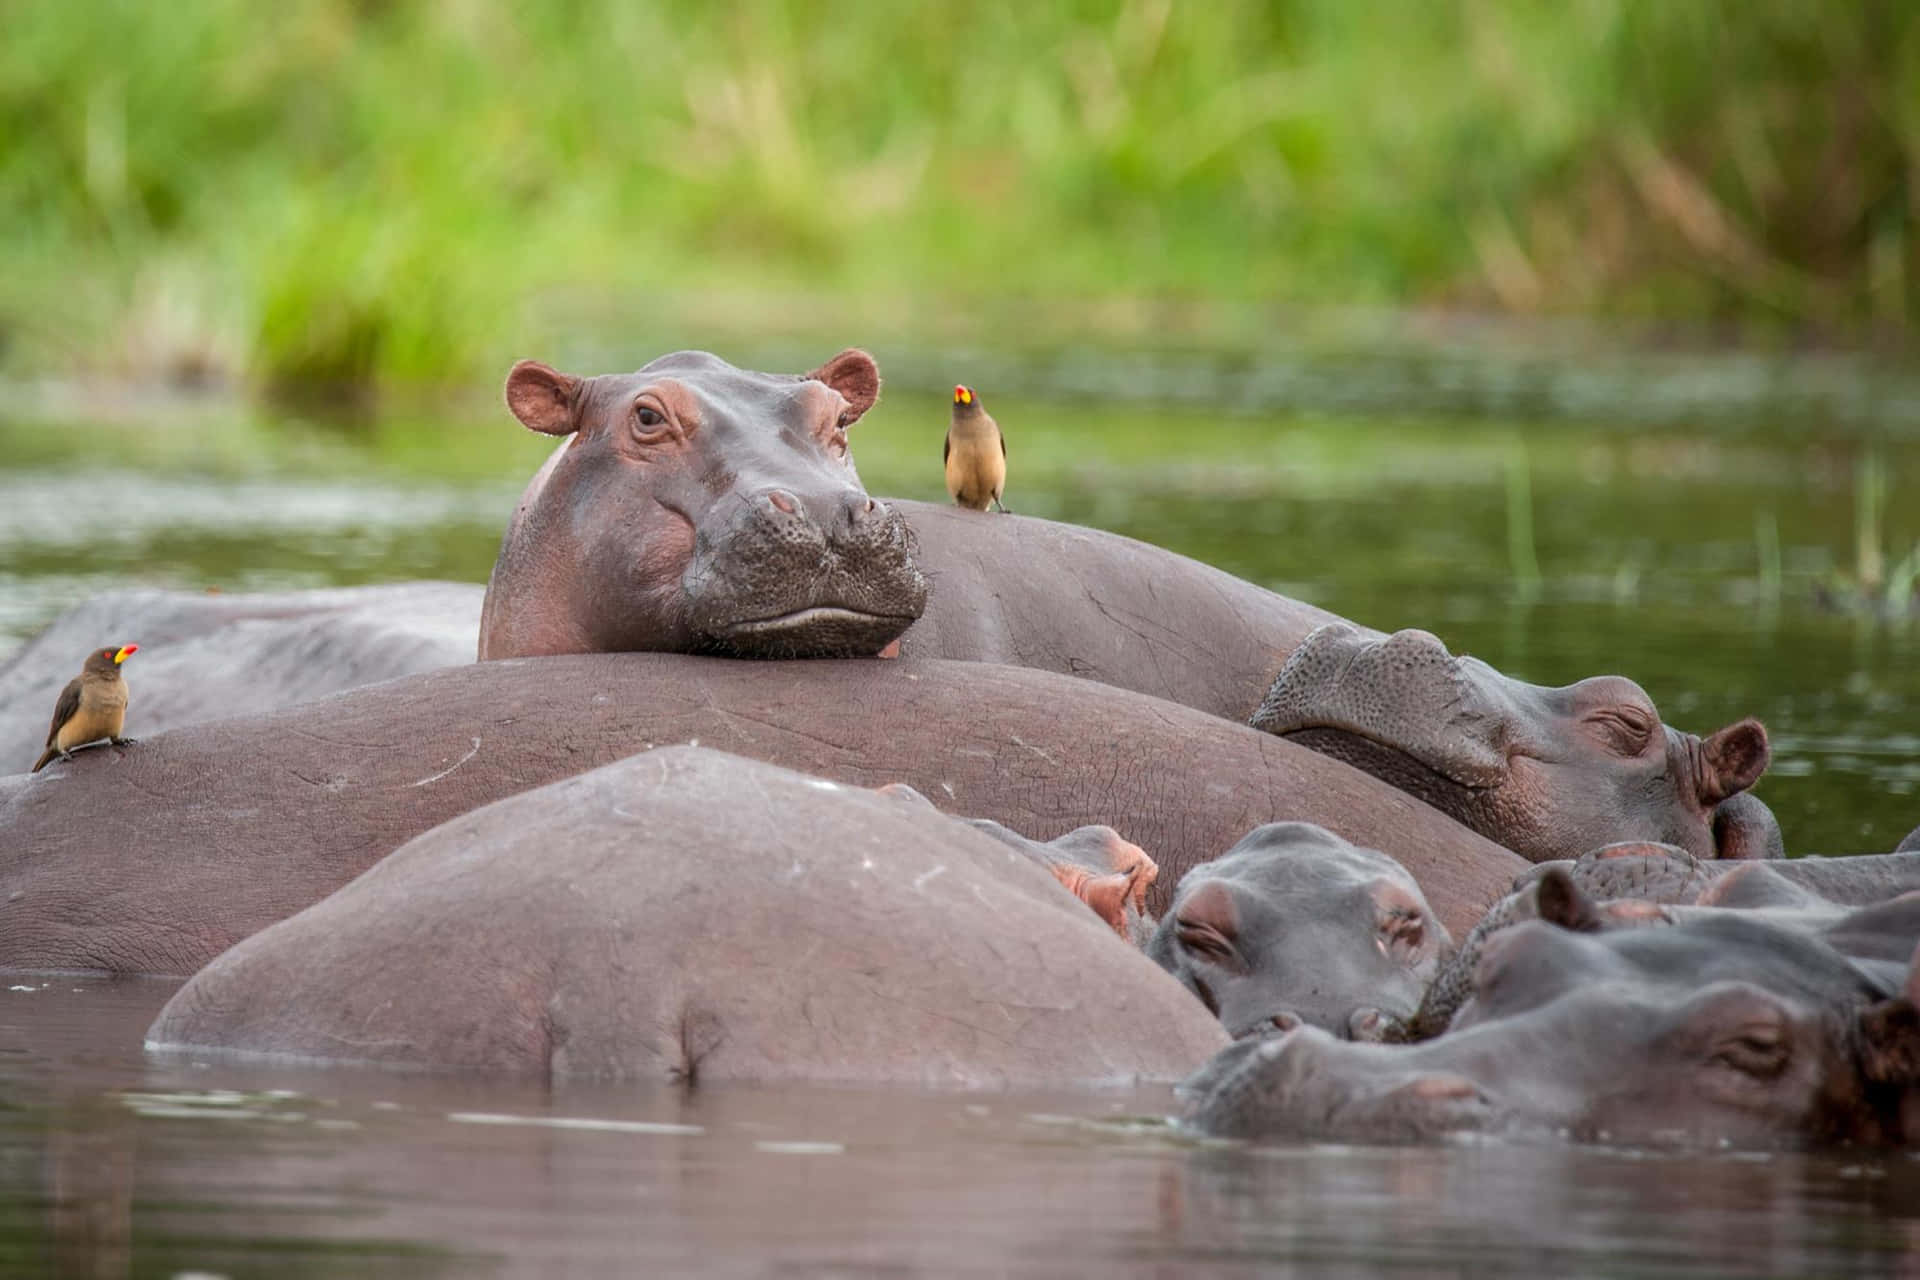 Closeup of a Hippopotamus Creasing Its Forehead